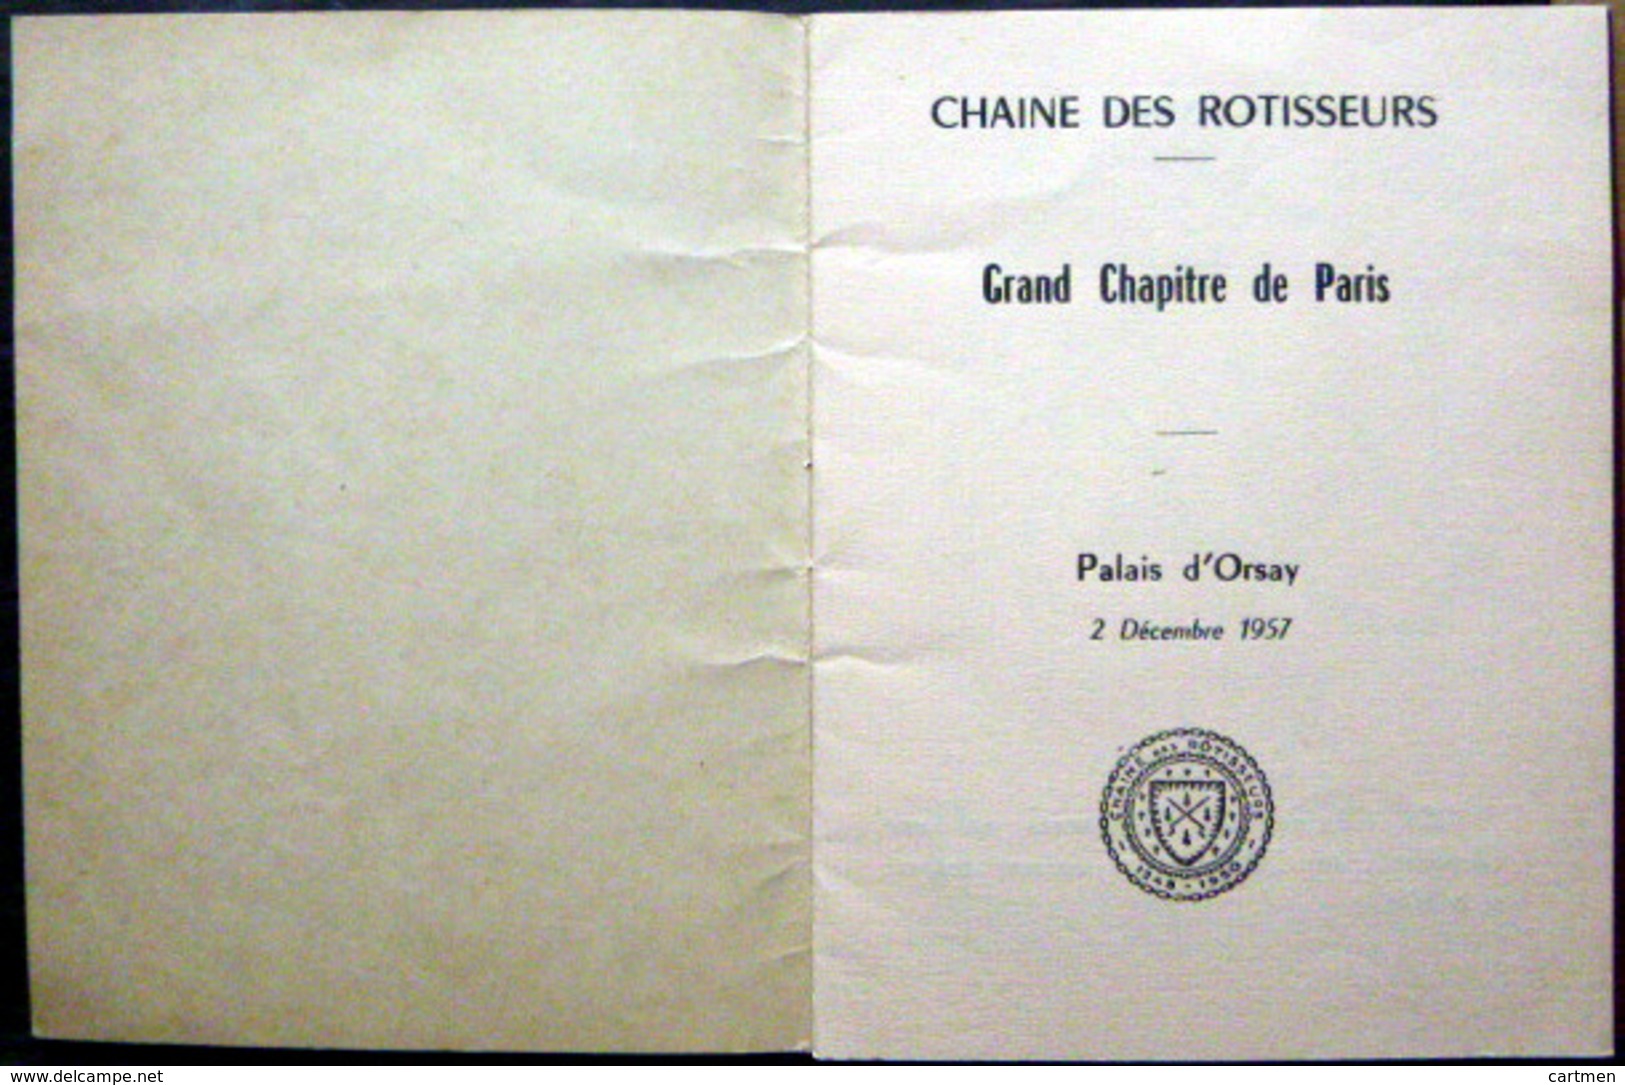 GASTRONOMIE CHAINE DES ROTISSEURS PROGRAMME ET MENU DU DINER DE DECEMBRE 1957 CURNONSKY - Menus